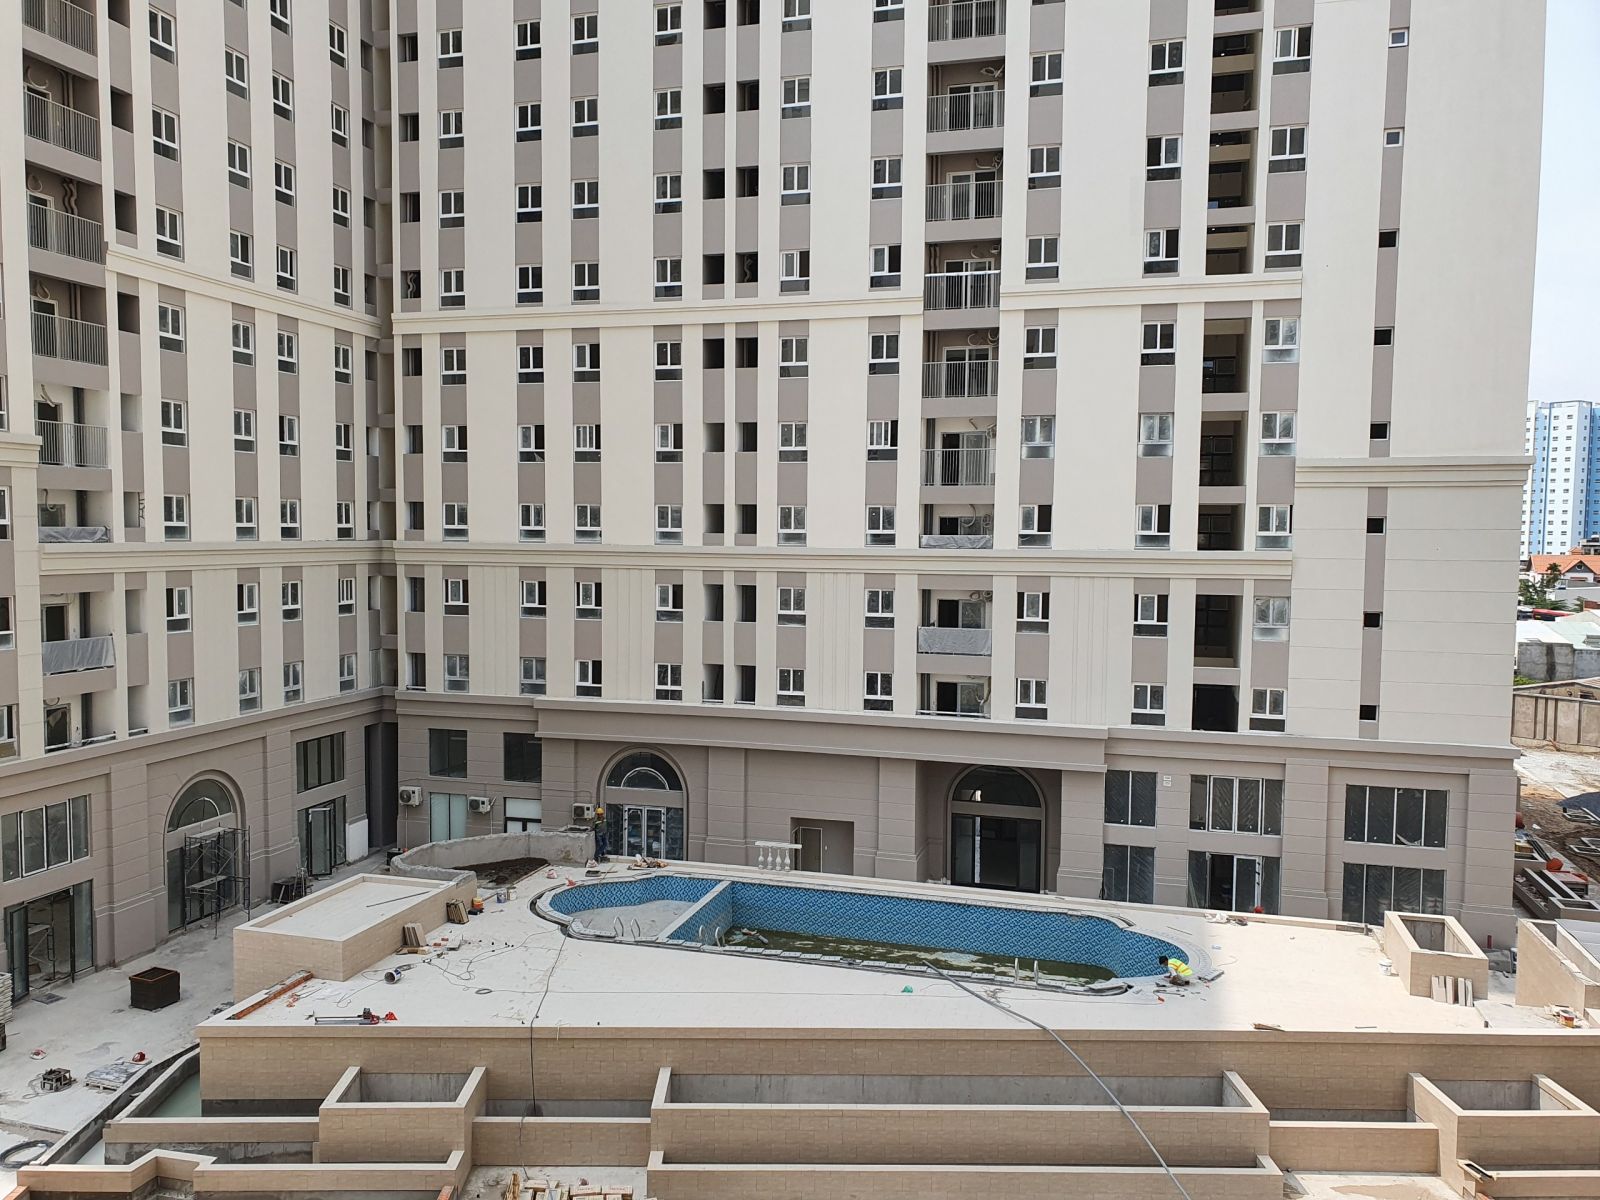 Bán căn hộ IMPERIAL Bình Tân, 57m2 2PN, lầu 5, đã hoàn thiện, chuẩn bị bàn giao